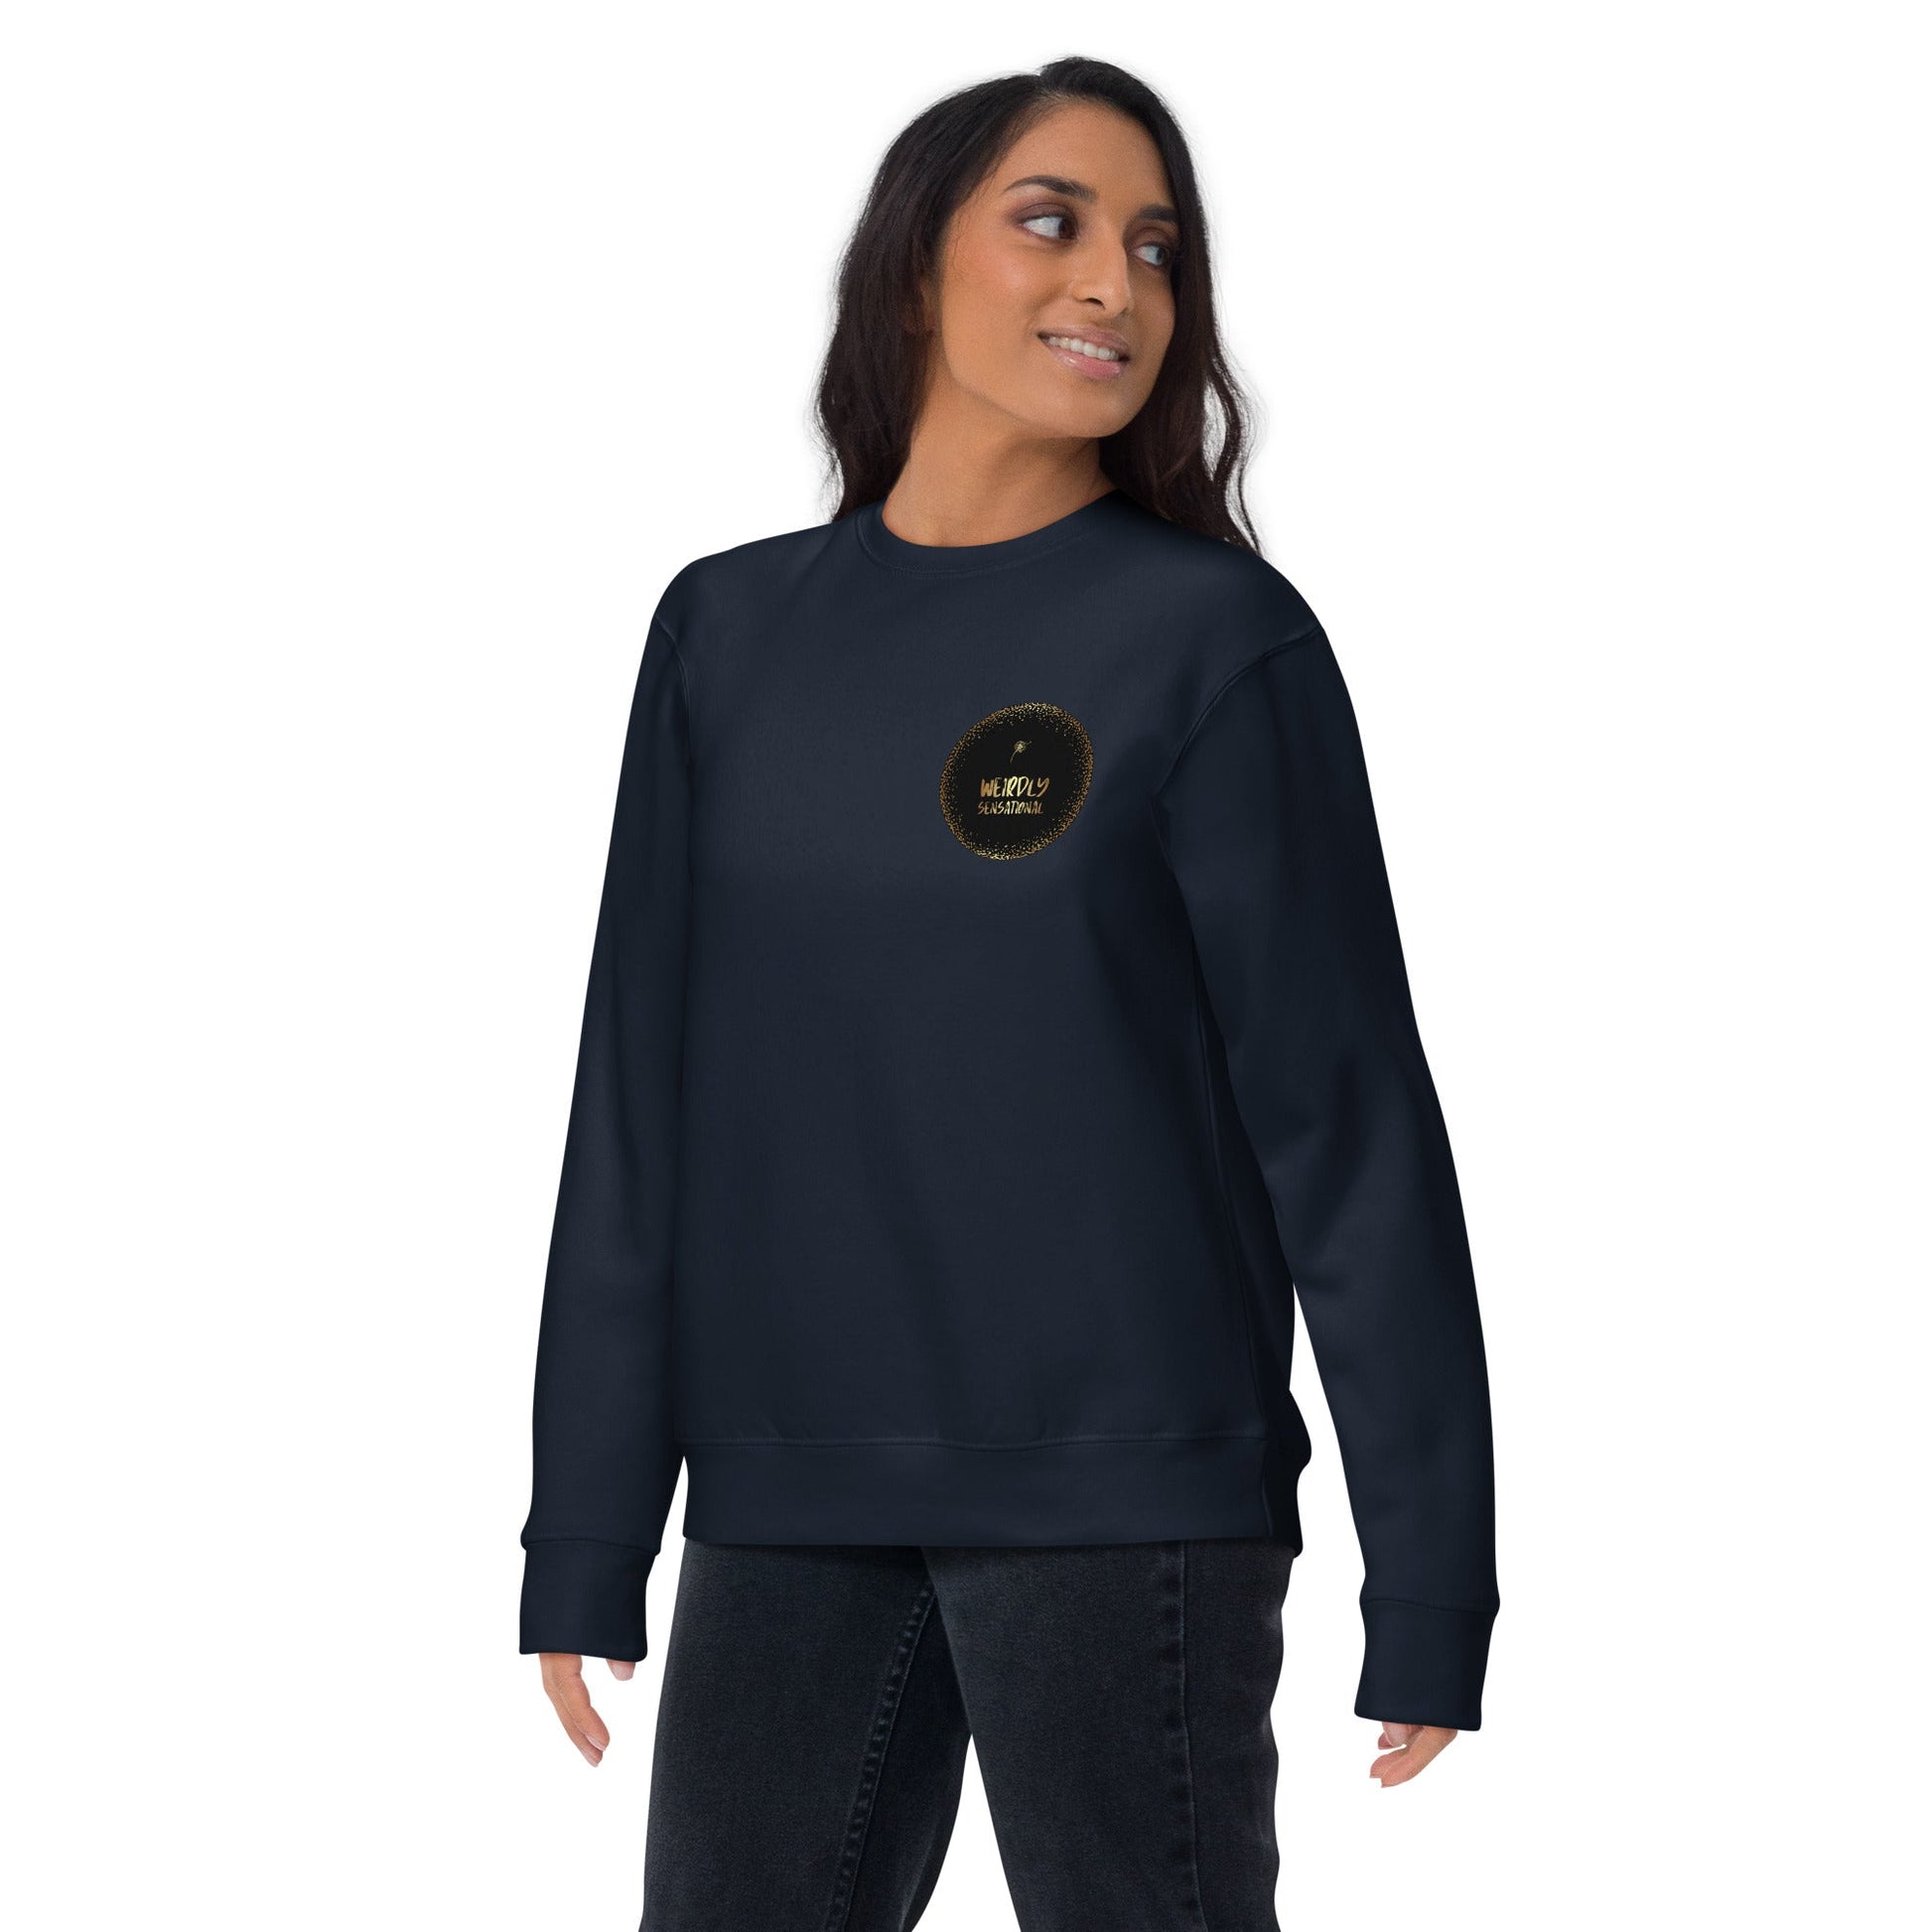 Overthinker Unisex Premium Sweatshirt - Weirdly Sensational